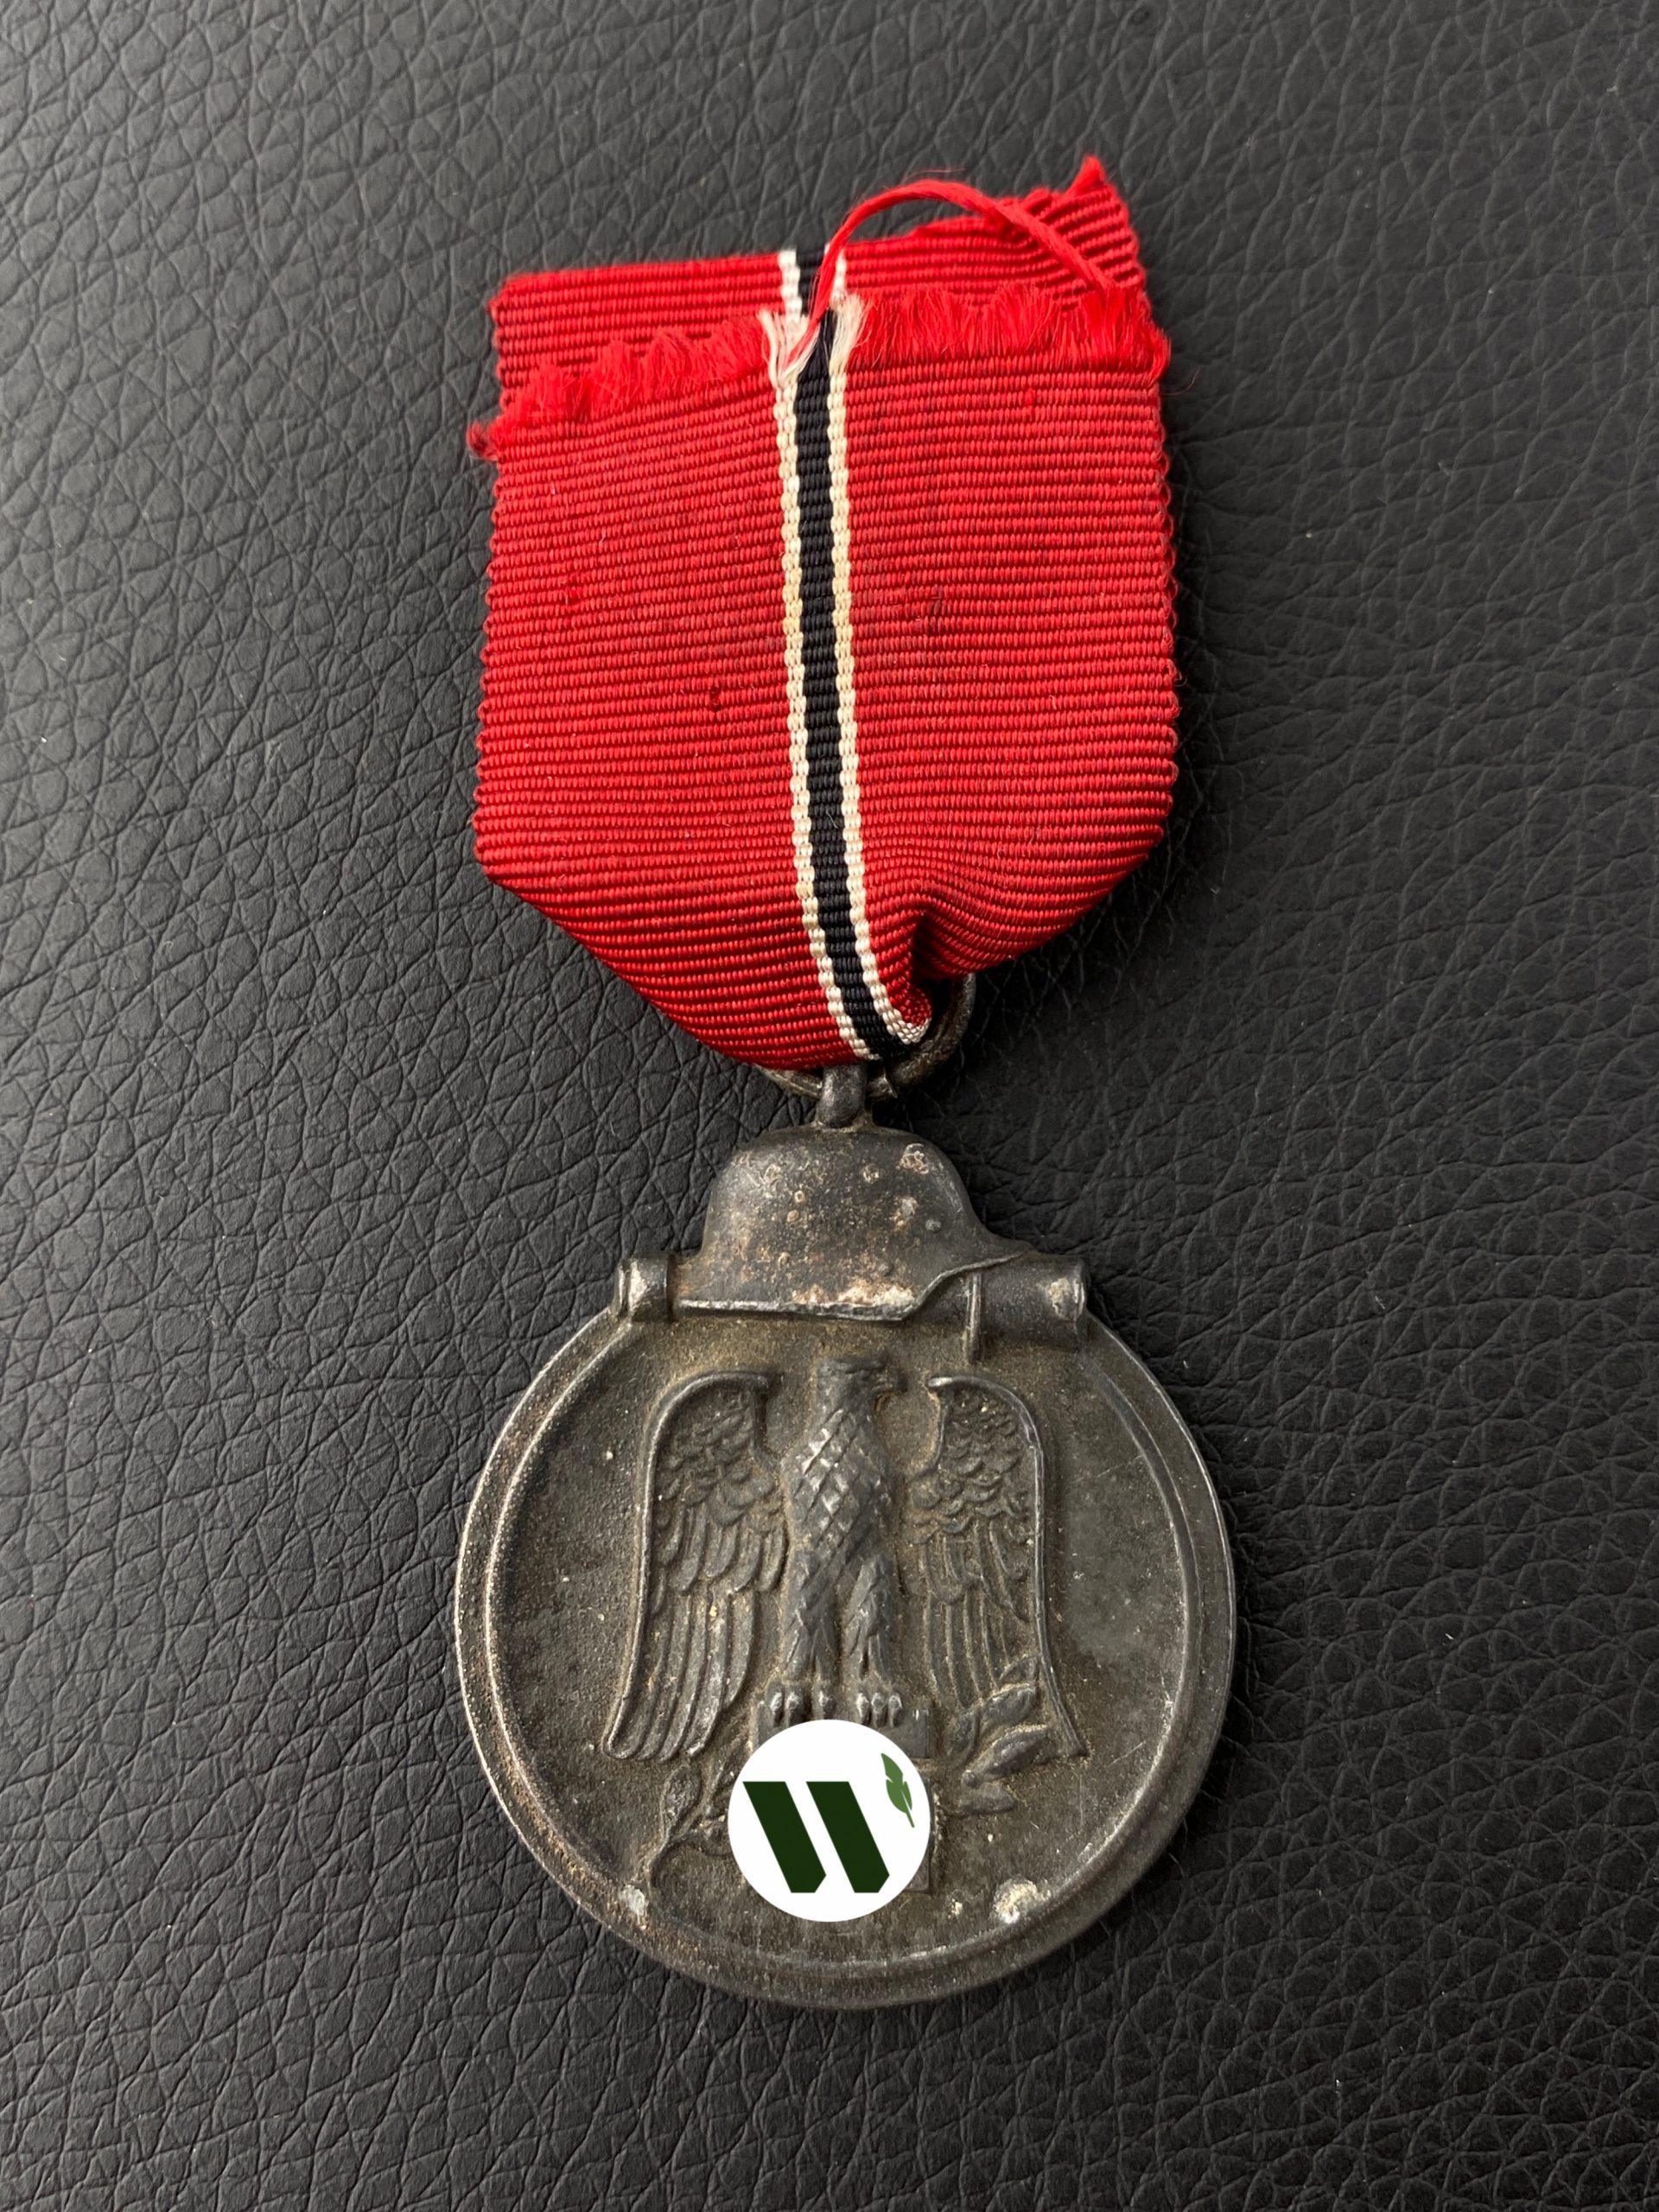 Медаль “За зимнюю кампанию на востоке 1941-42”.